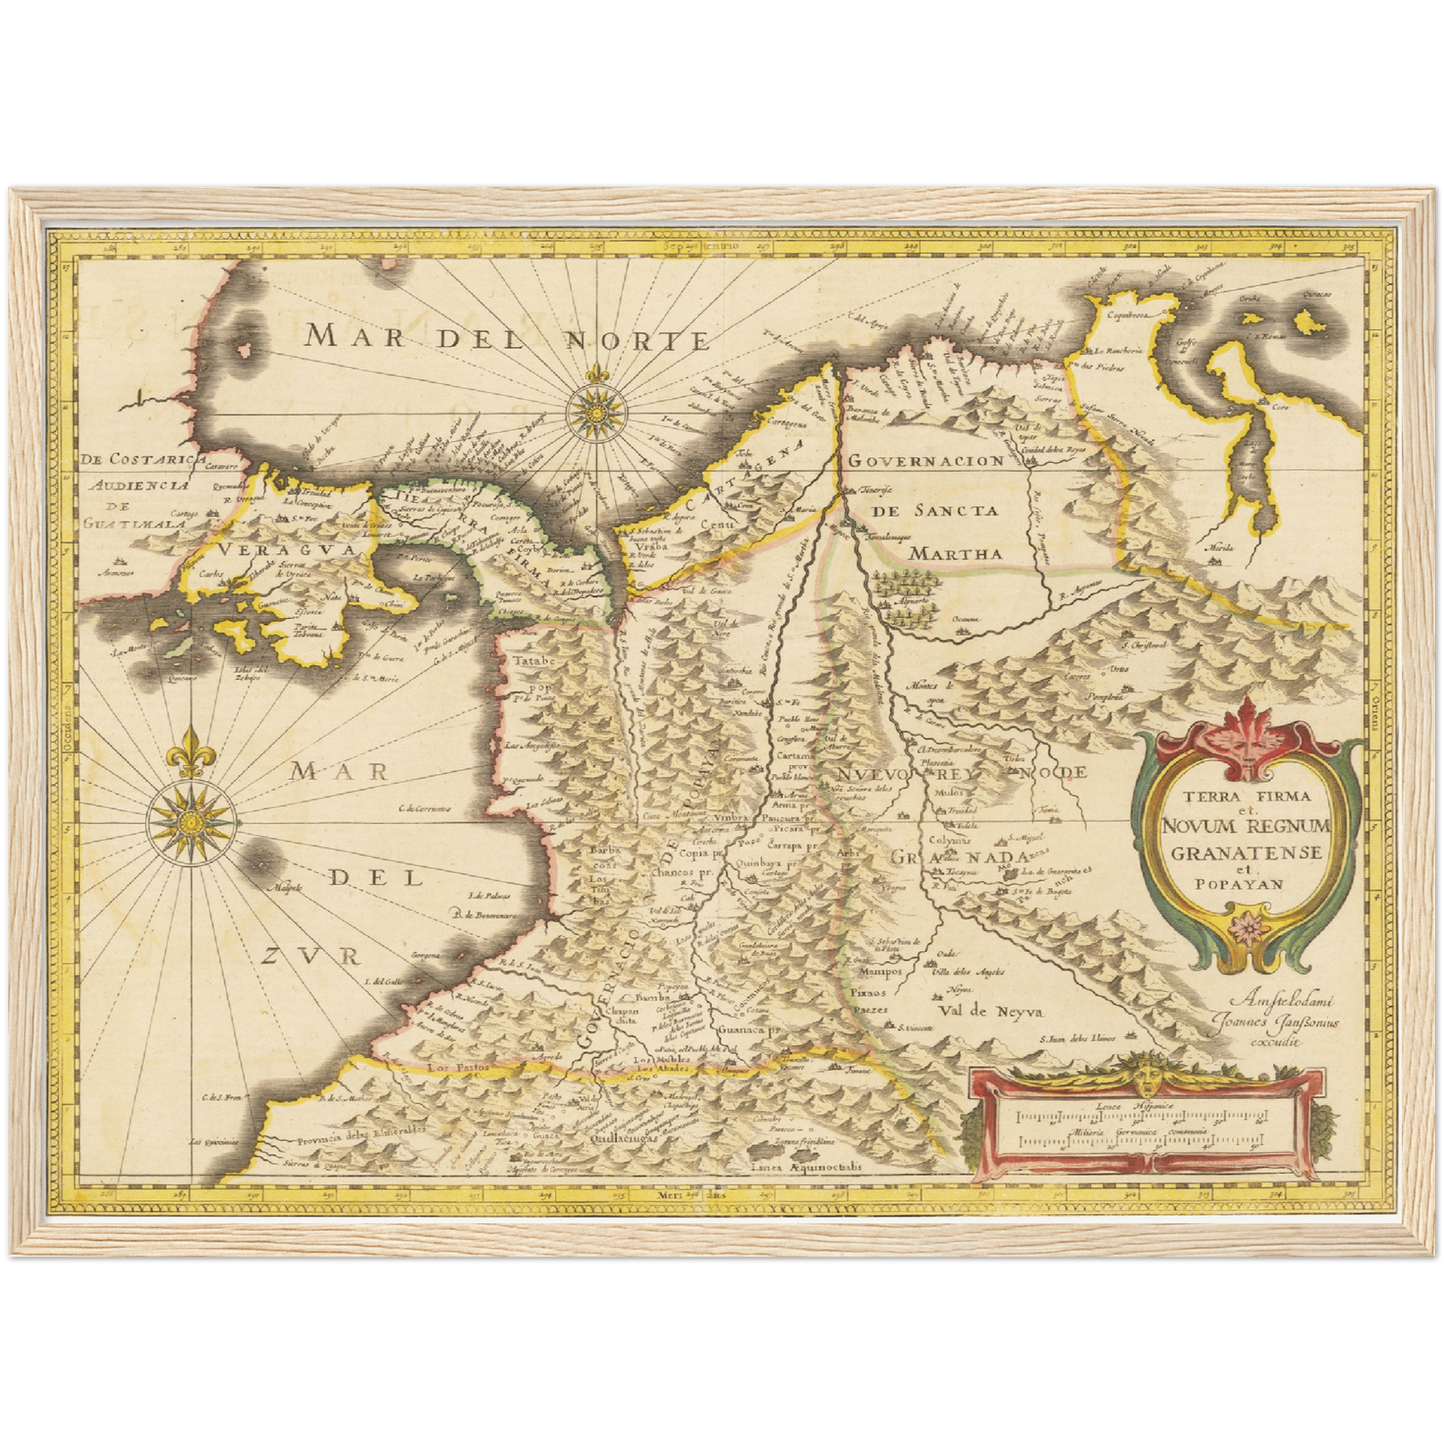 Historische Landkarte Kolumbien um 1638